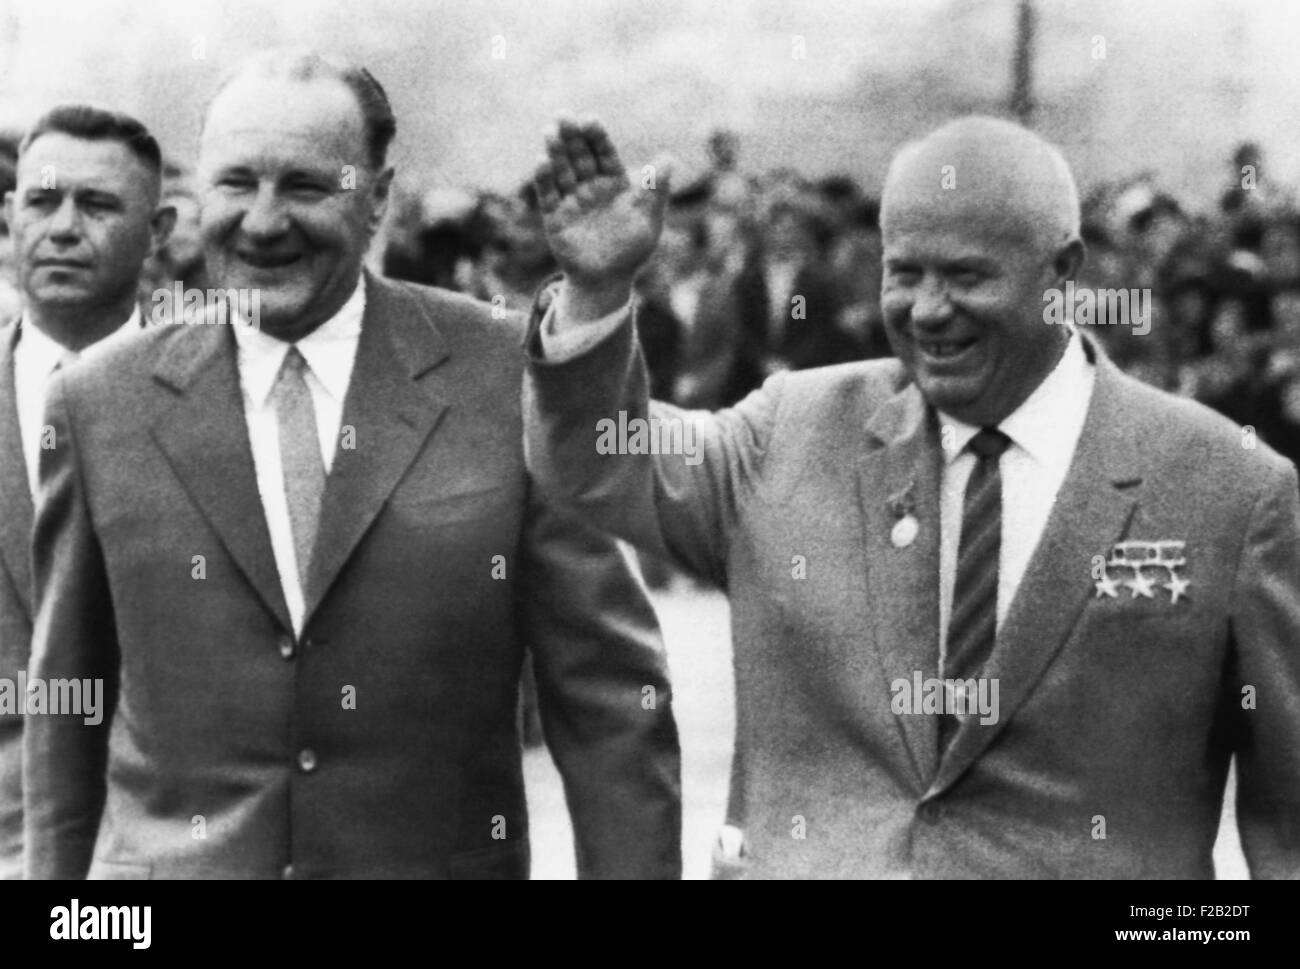 Sowjetischen Ministerpräsidenten Nikita Chruschtschow mit ungarischen Premier Janos Kadar, 10. Juli 1963. Kadar übernahm die Macht nach dem 1956 ungarischen Aufstand unter dem Druck der Sowjetunion. Bis 1988 war er als Staatsoberhaupt. (CSU 2015 8 559) Stockfoto